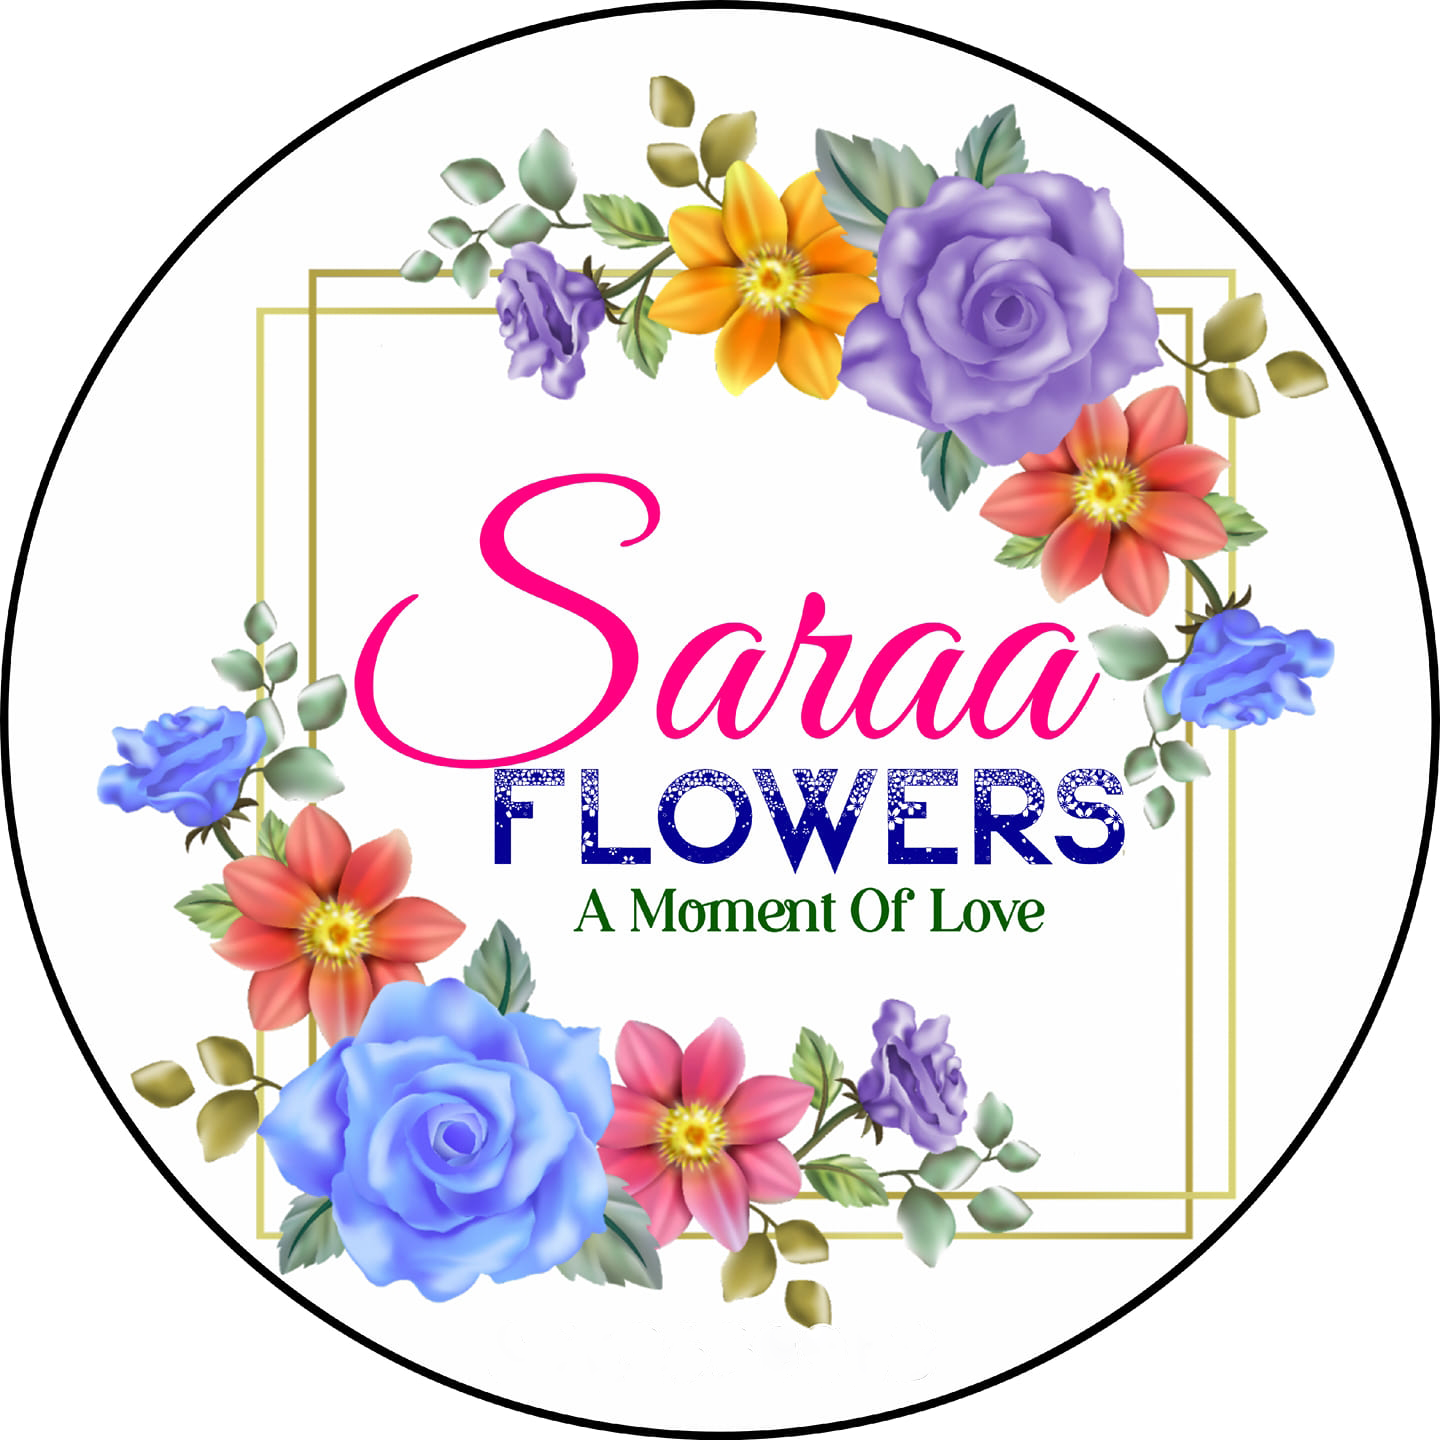 Saara Flowers And Bride Bouquet